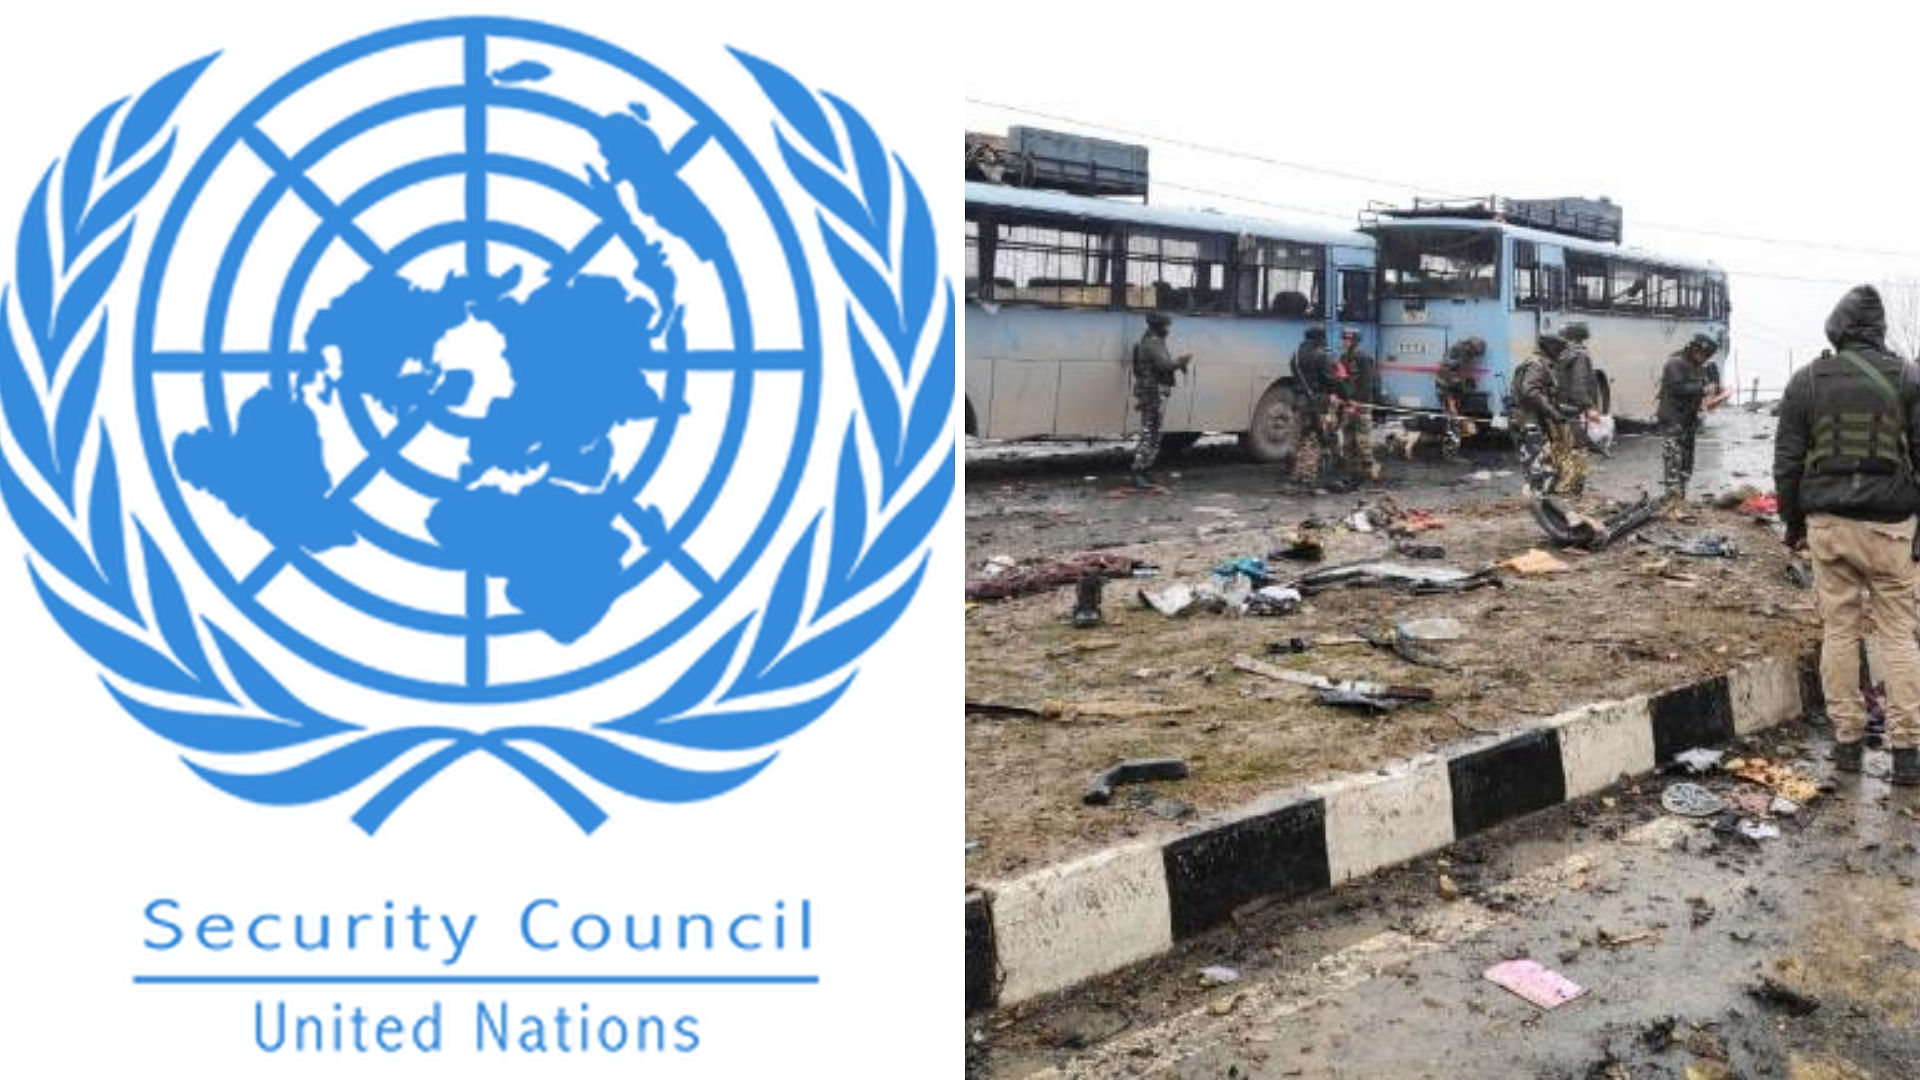 संयुक्त राष्ट्र सुरक्षा परिषद (UNSC) के सदस्य देशों ने पुलवामा आतंकी हमले की कड़ी निंदा की है. 